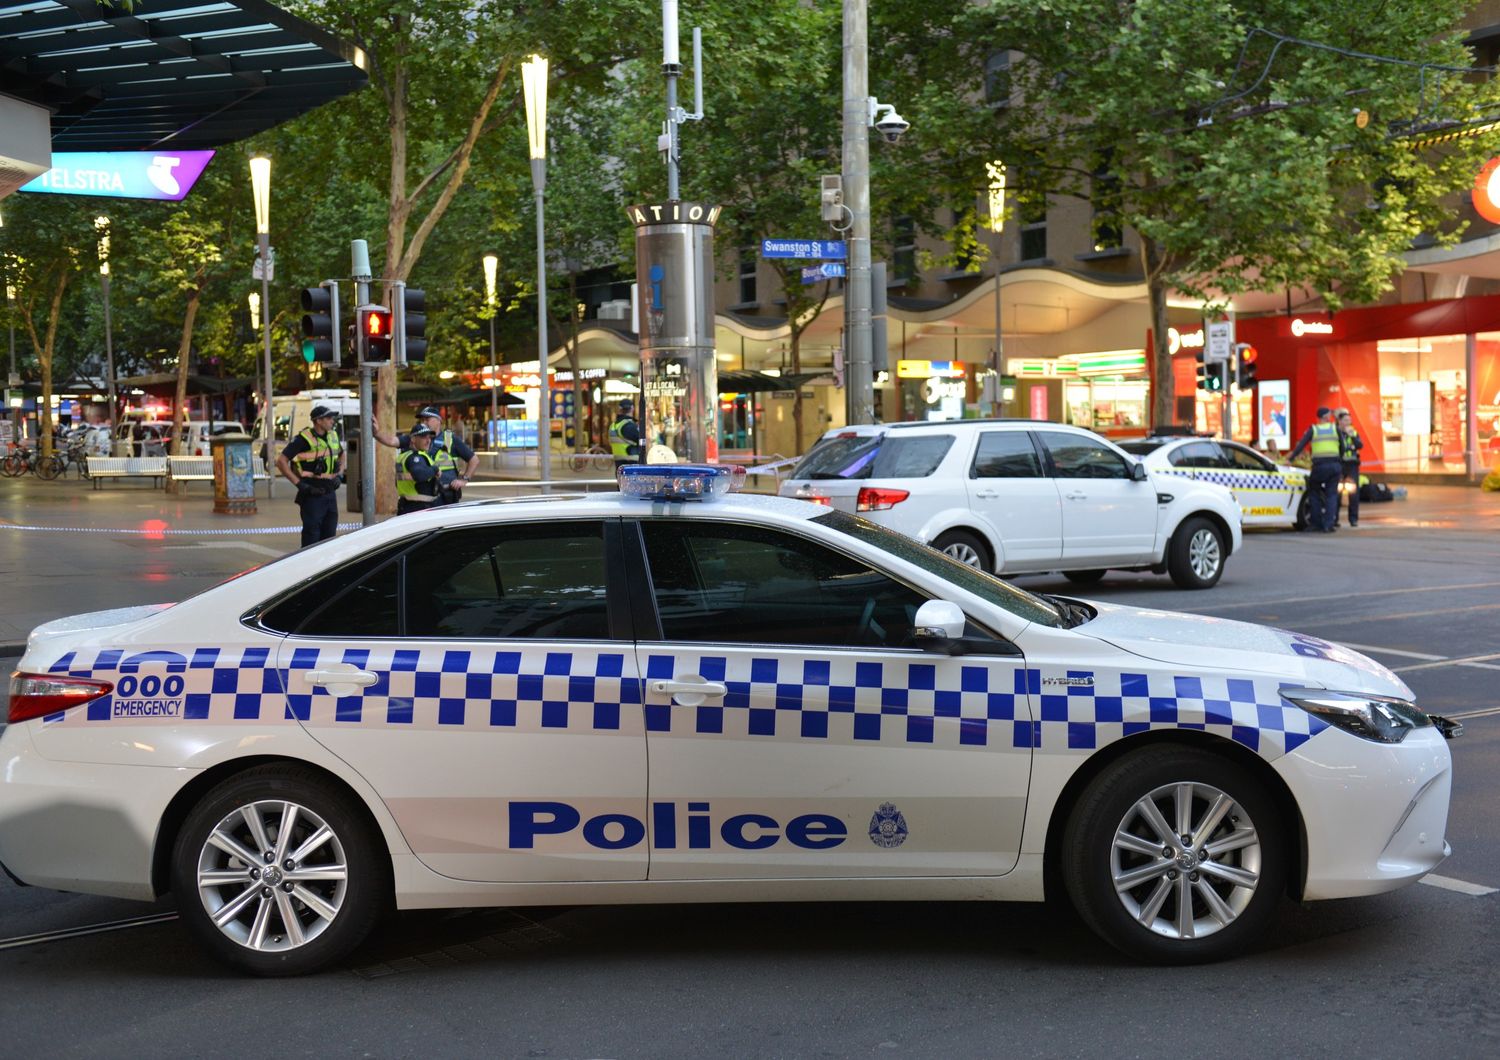 Polizia, Australia